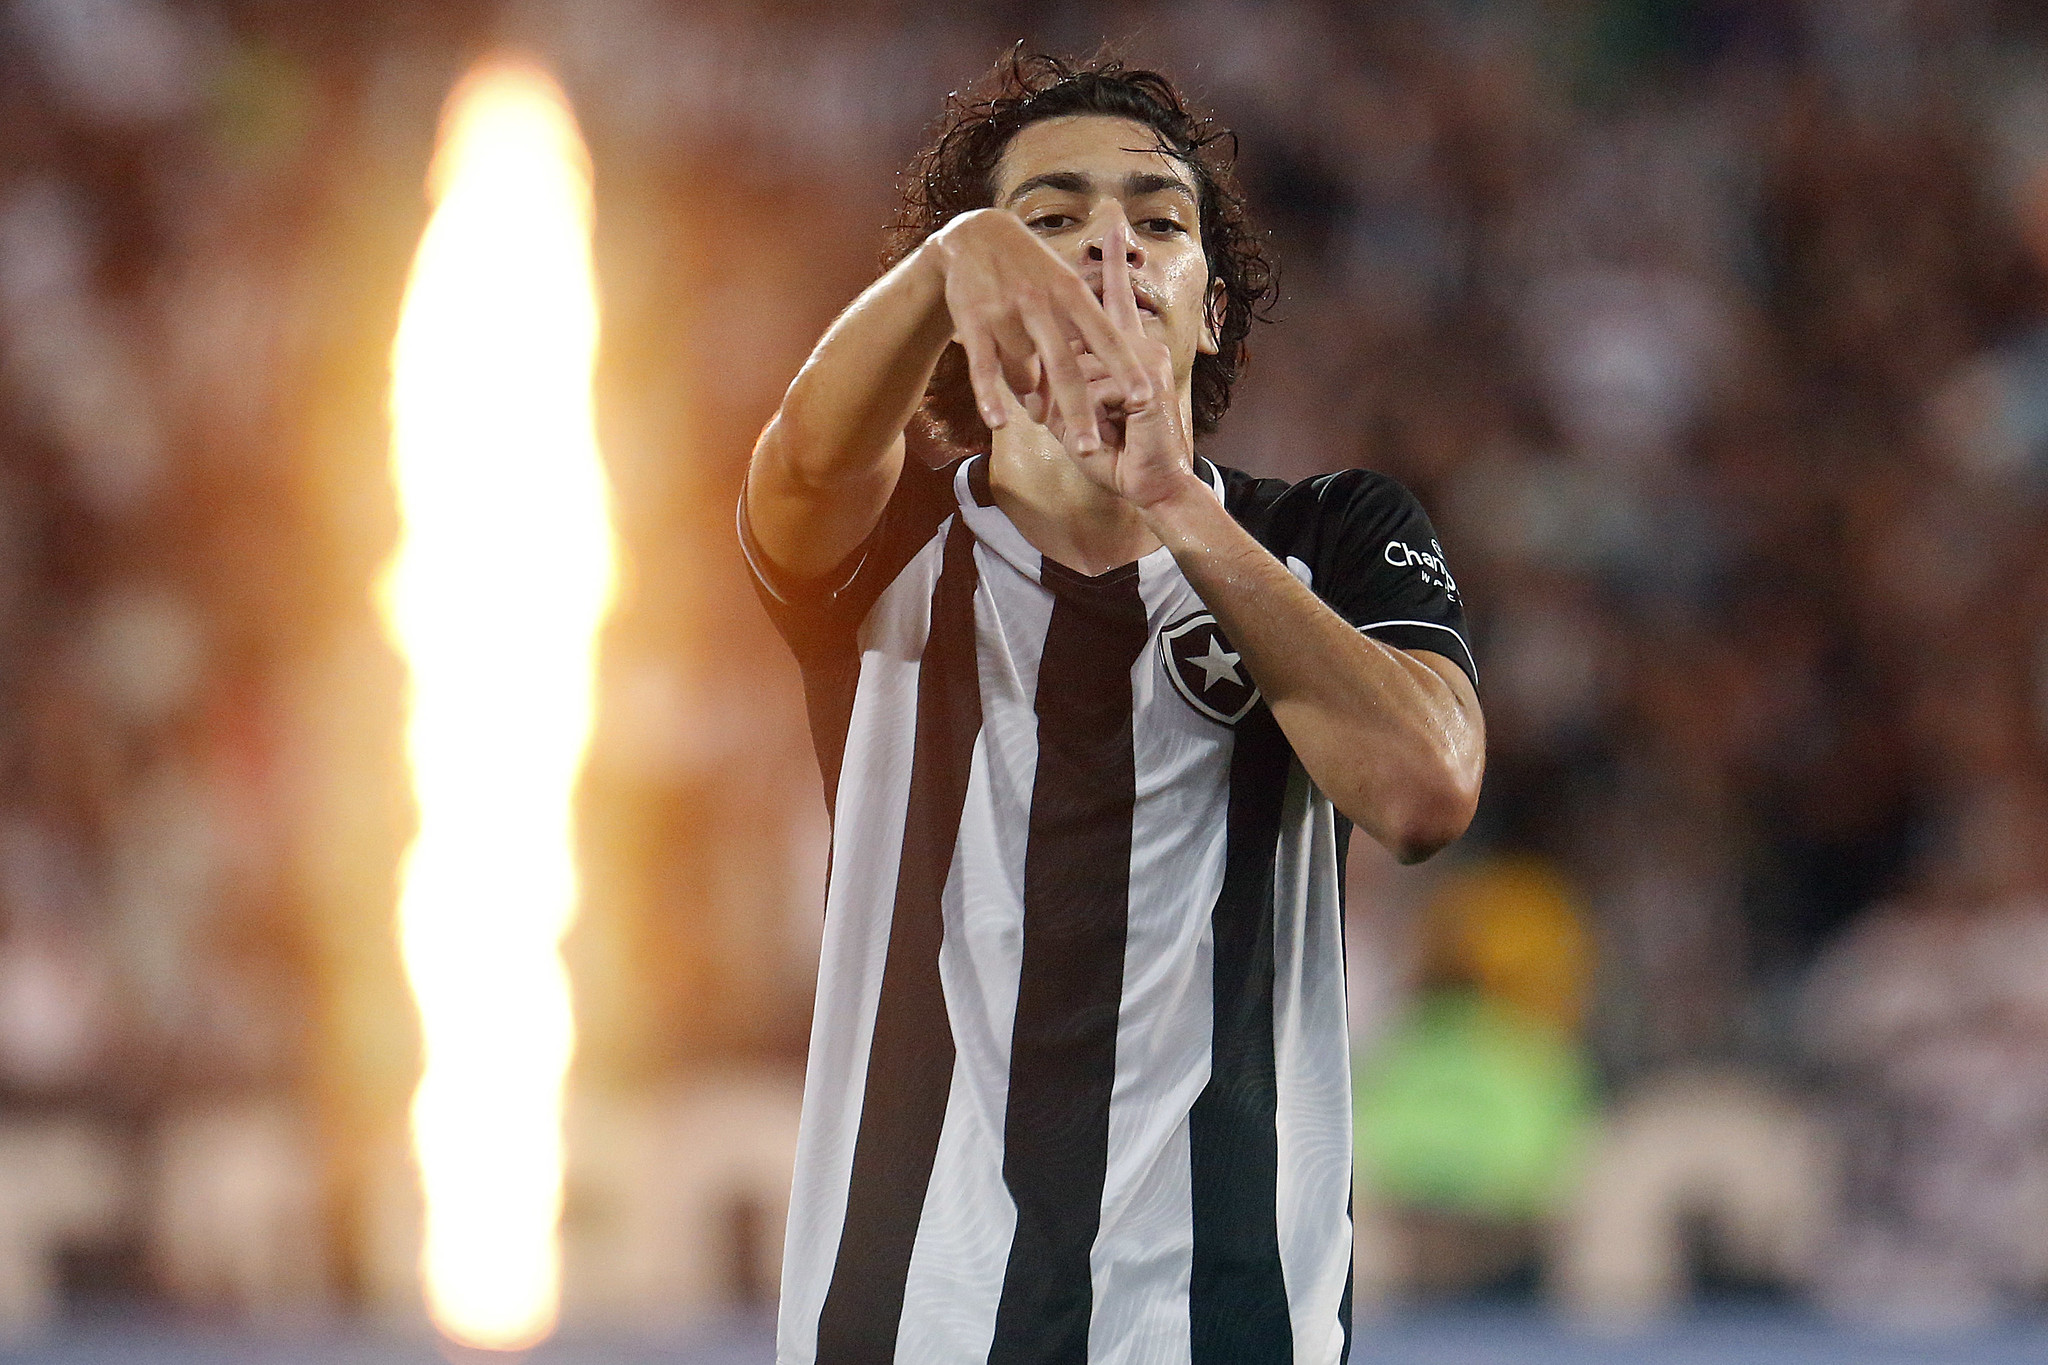 Botafogo x Ceilândia